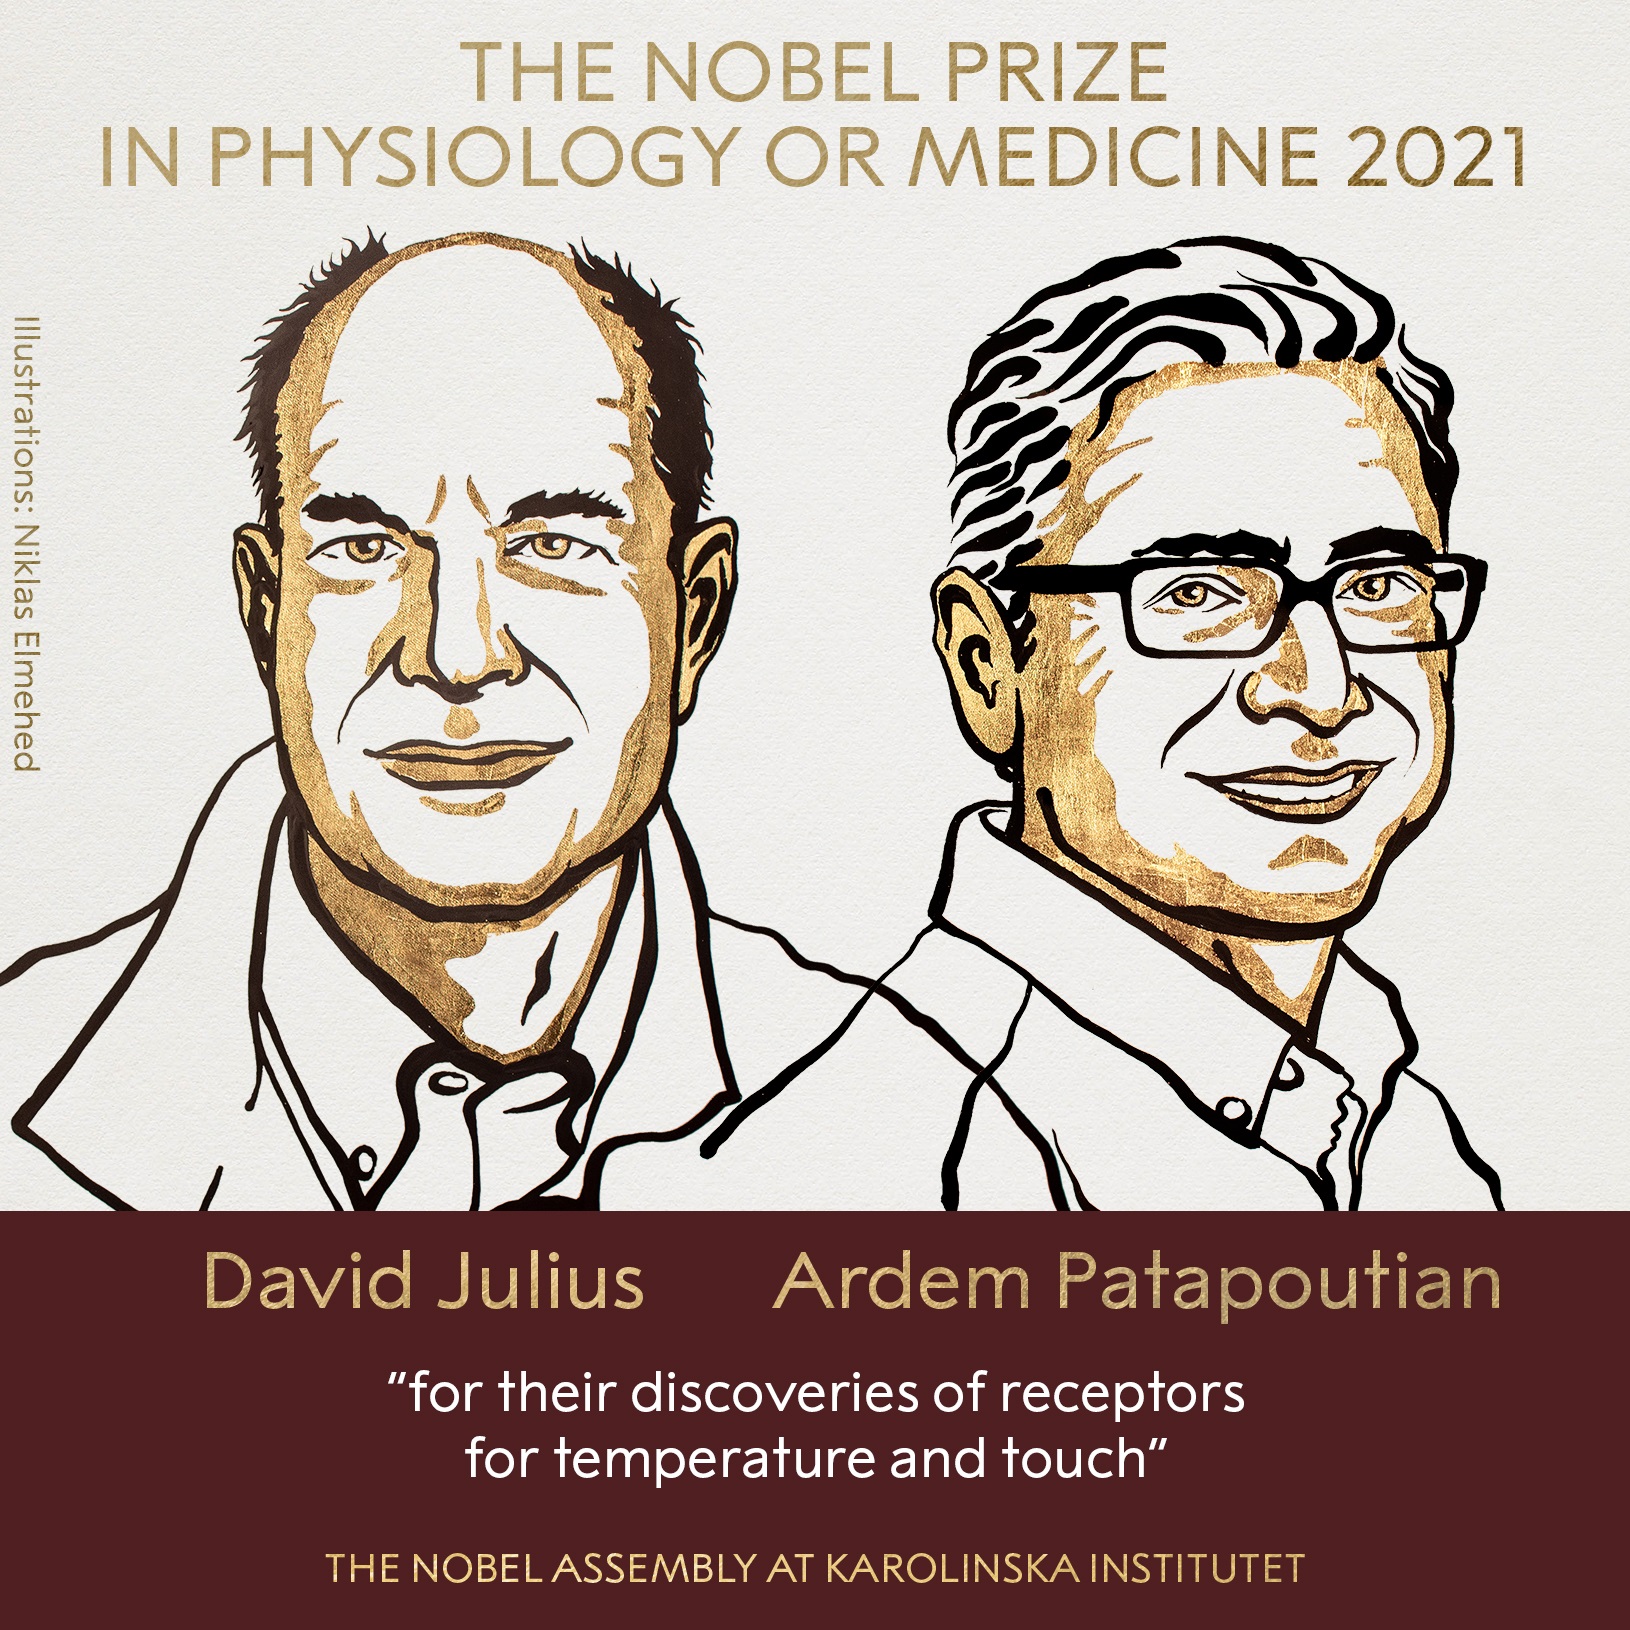 David julius and Ardem wins nobel medicine-2021